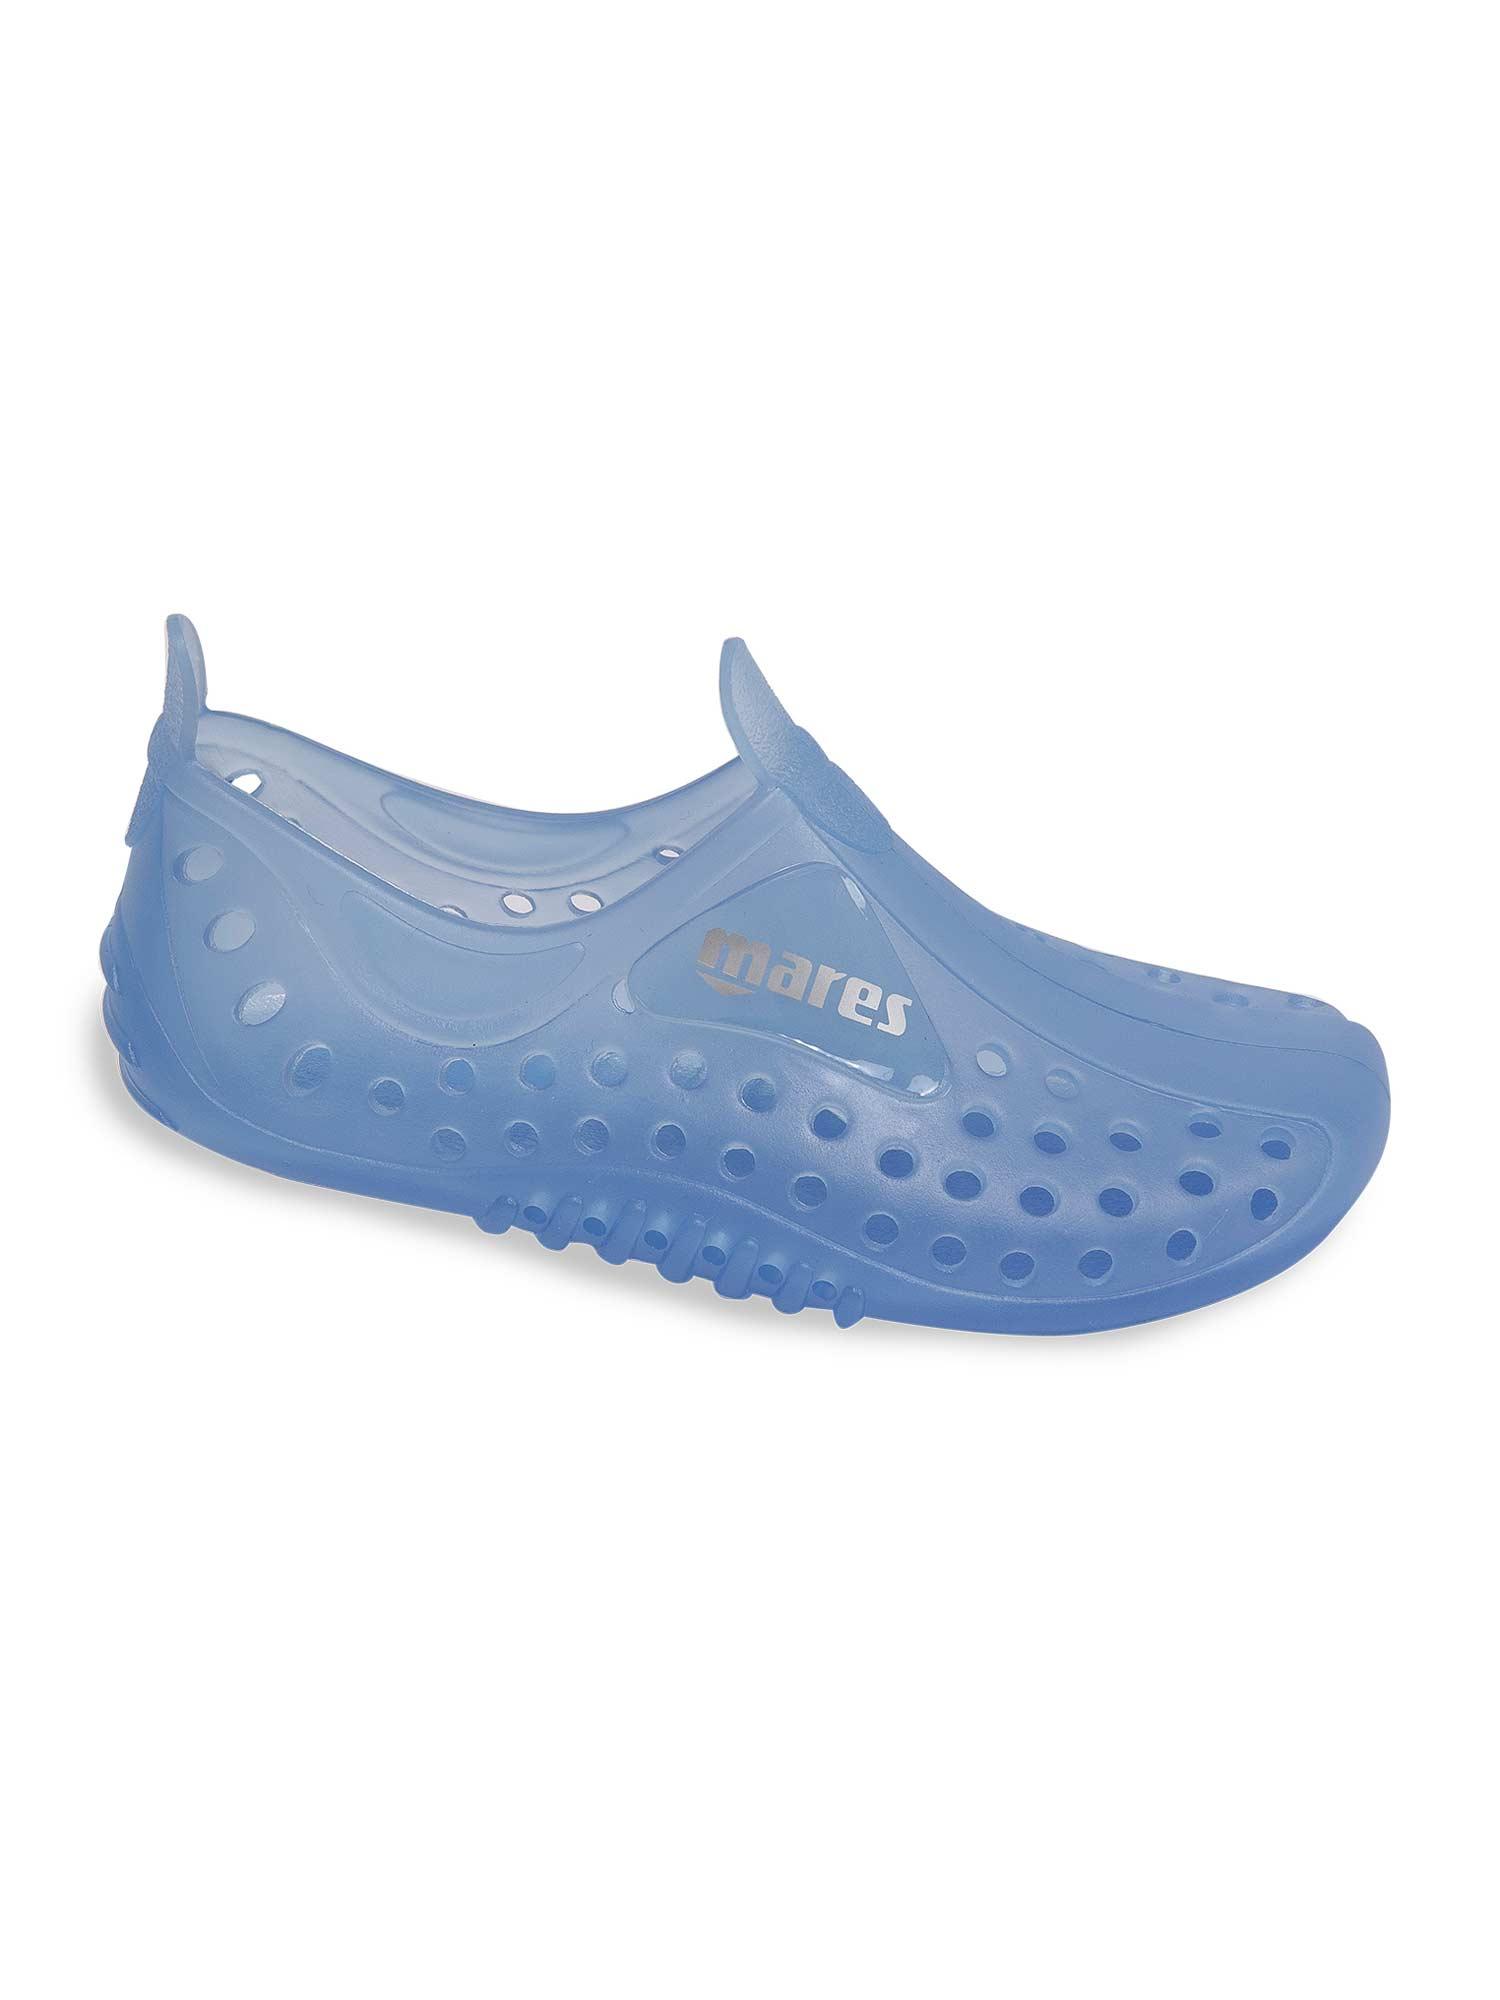 Selected image for MARES Cliff Dečija obuća za vodu plava